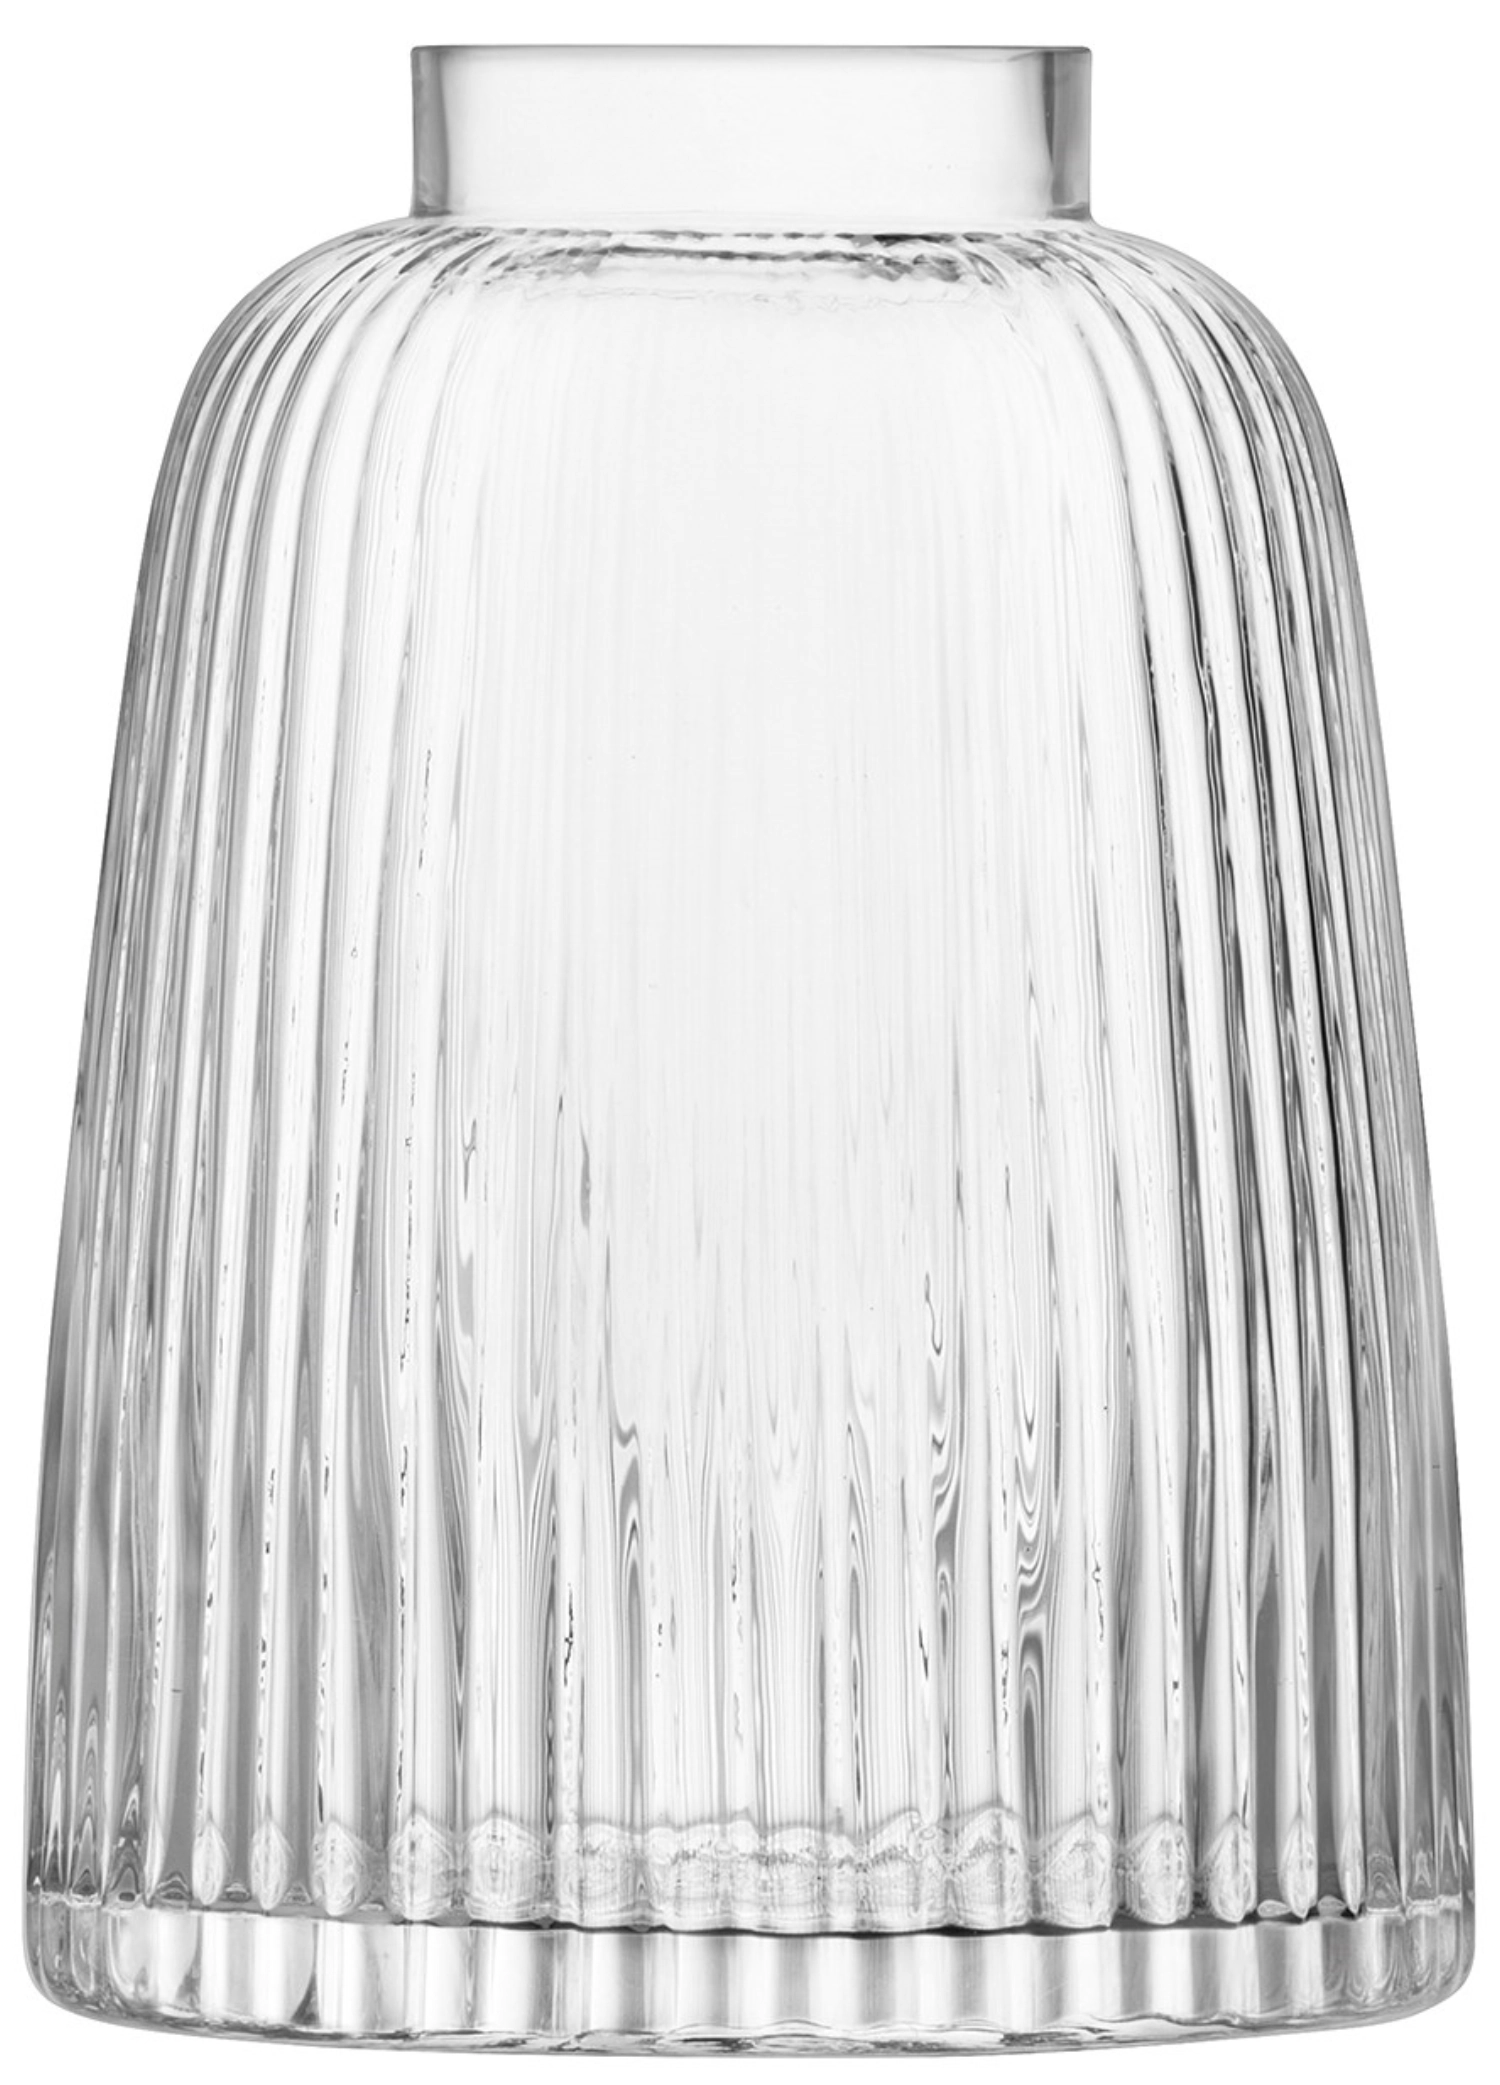 Pleat Vase H26cm transparent